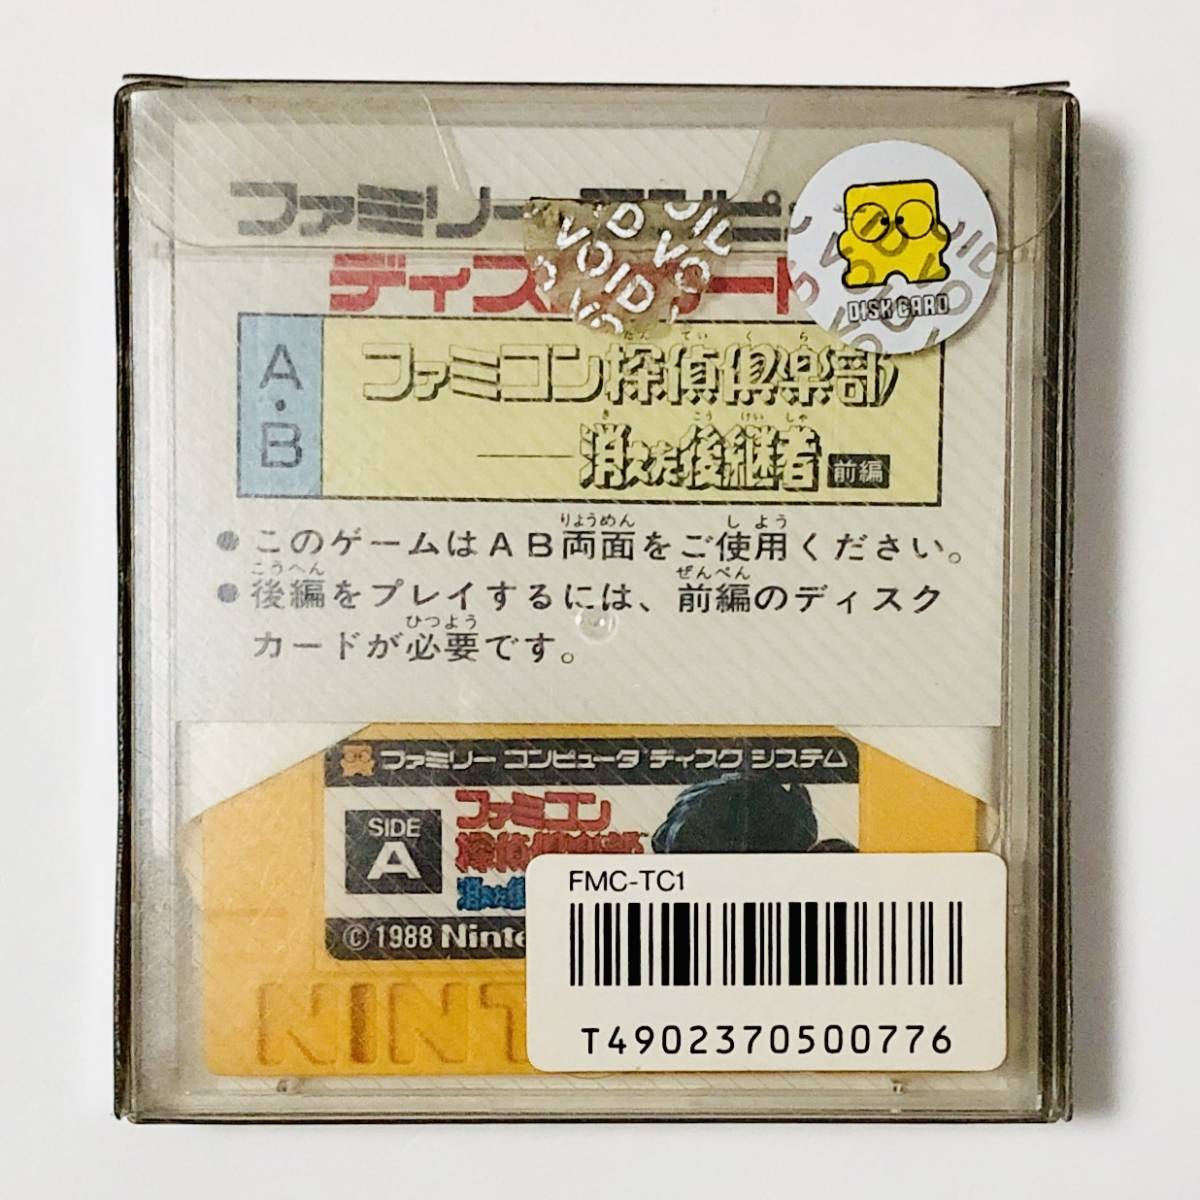 ファミコン ディスクシステム ファミコン探偵倶楽部 消えた後継者 前編 Nintendo Famicom Disk System Famicom Detective Club Zenpen CIB